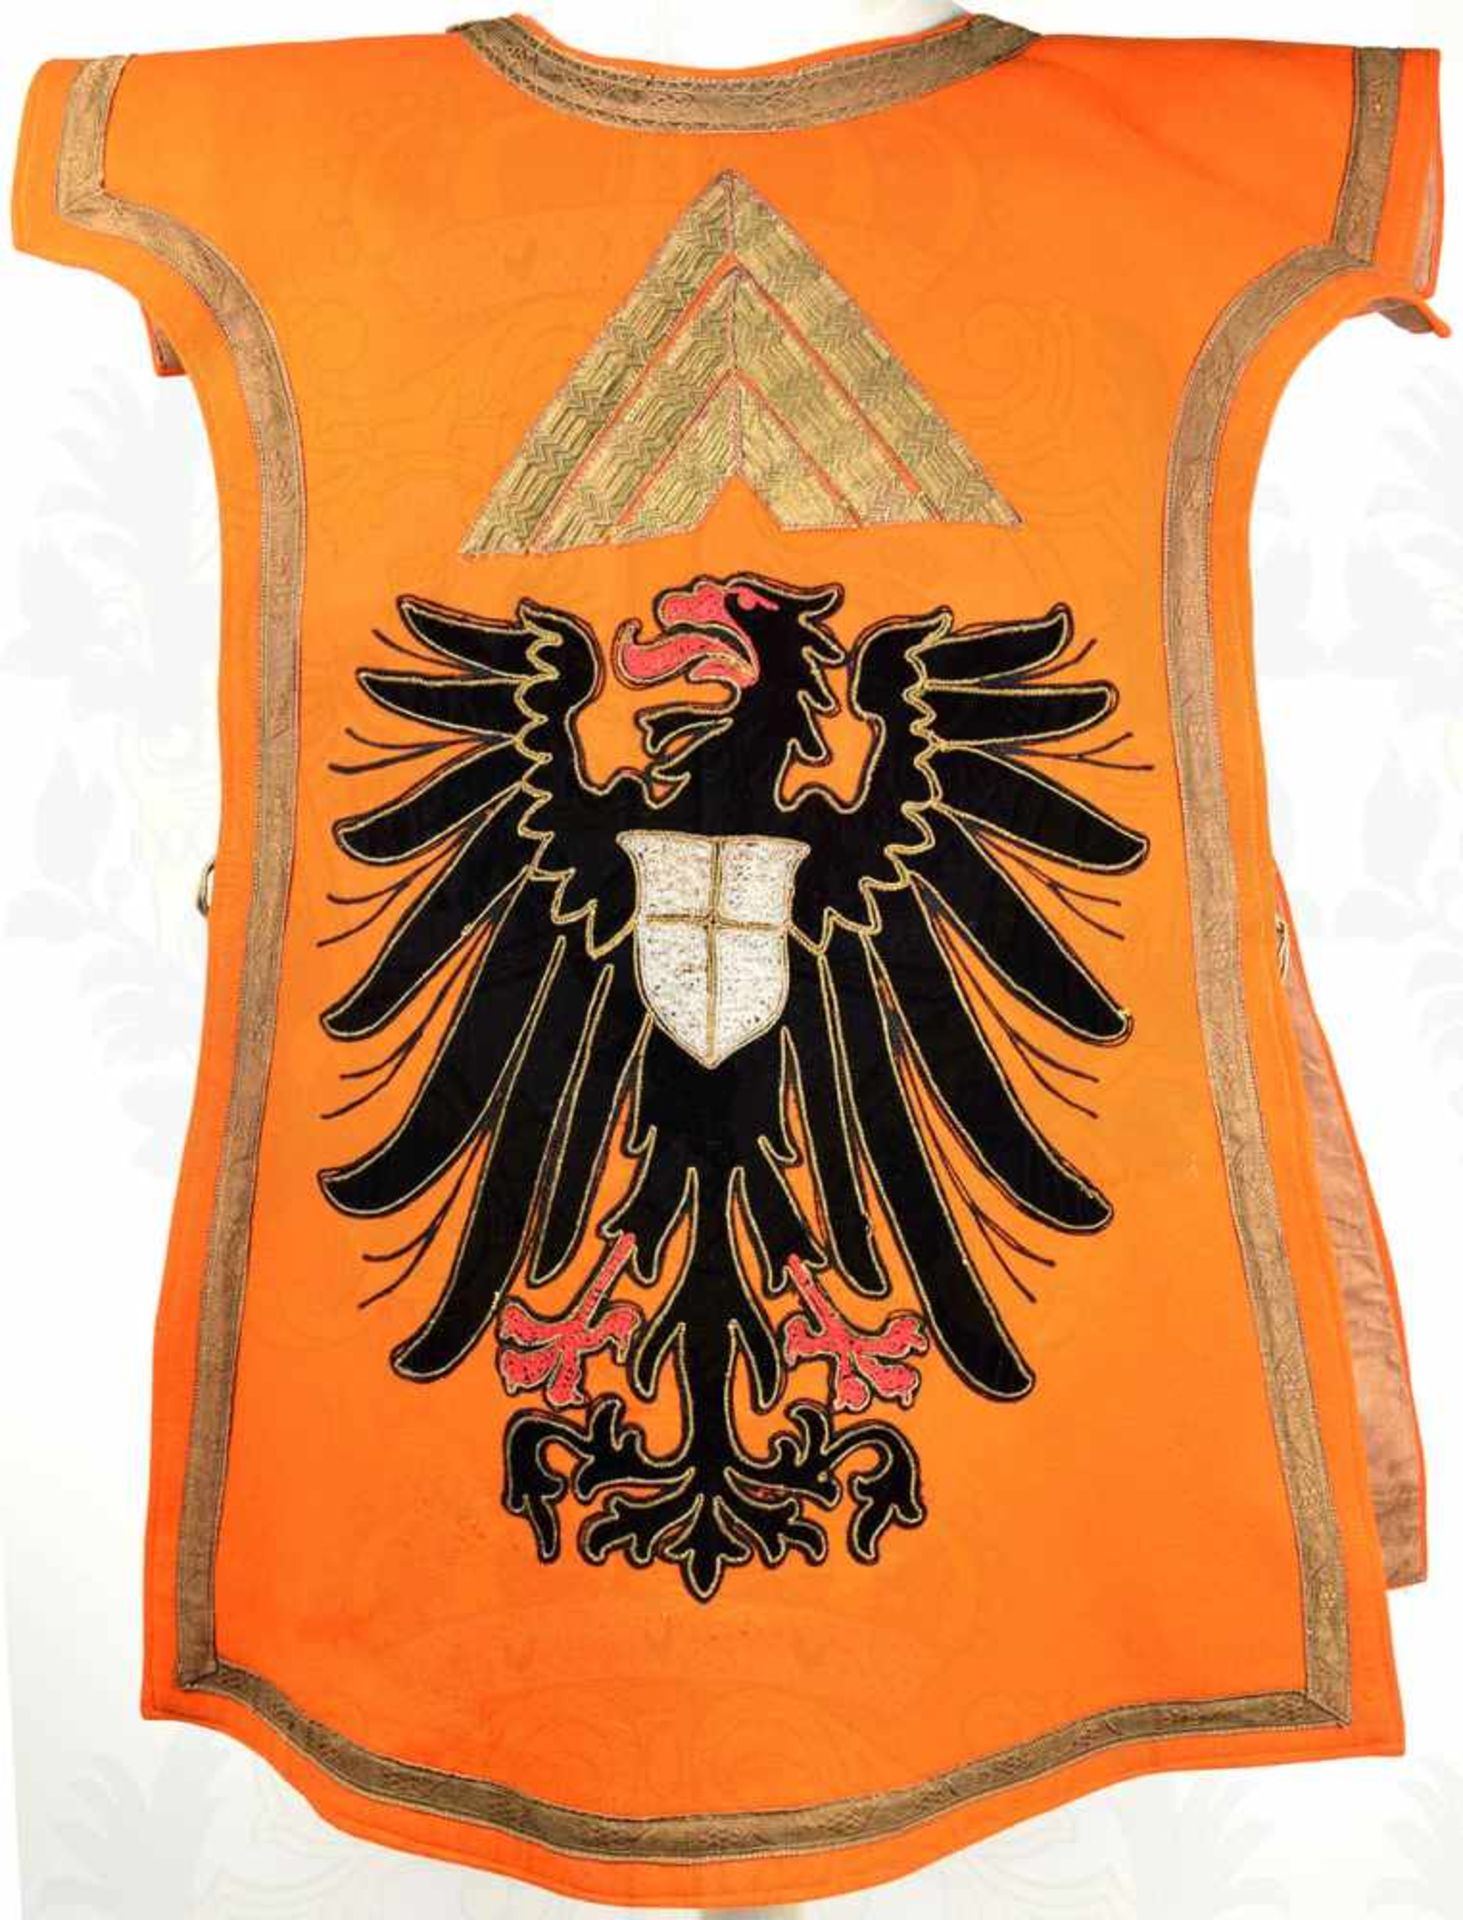 TAPPERT FÜR REICHSHEROLDE, Historismusfertigung für Kostümfeste um 1900, orangerotes Tuch m.